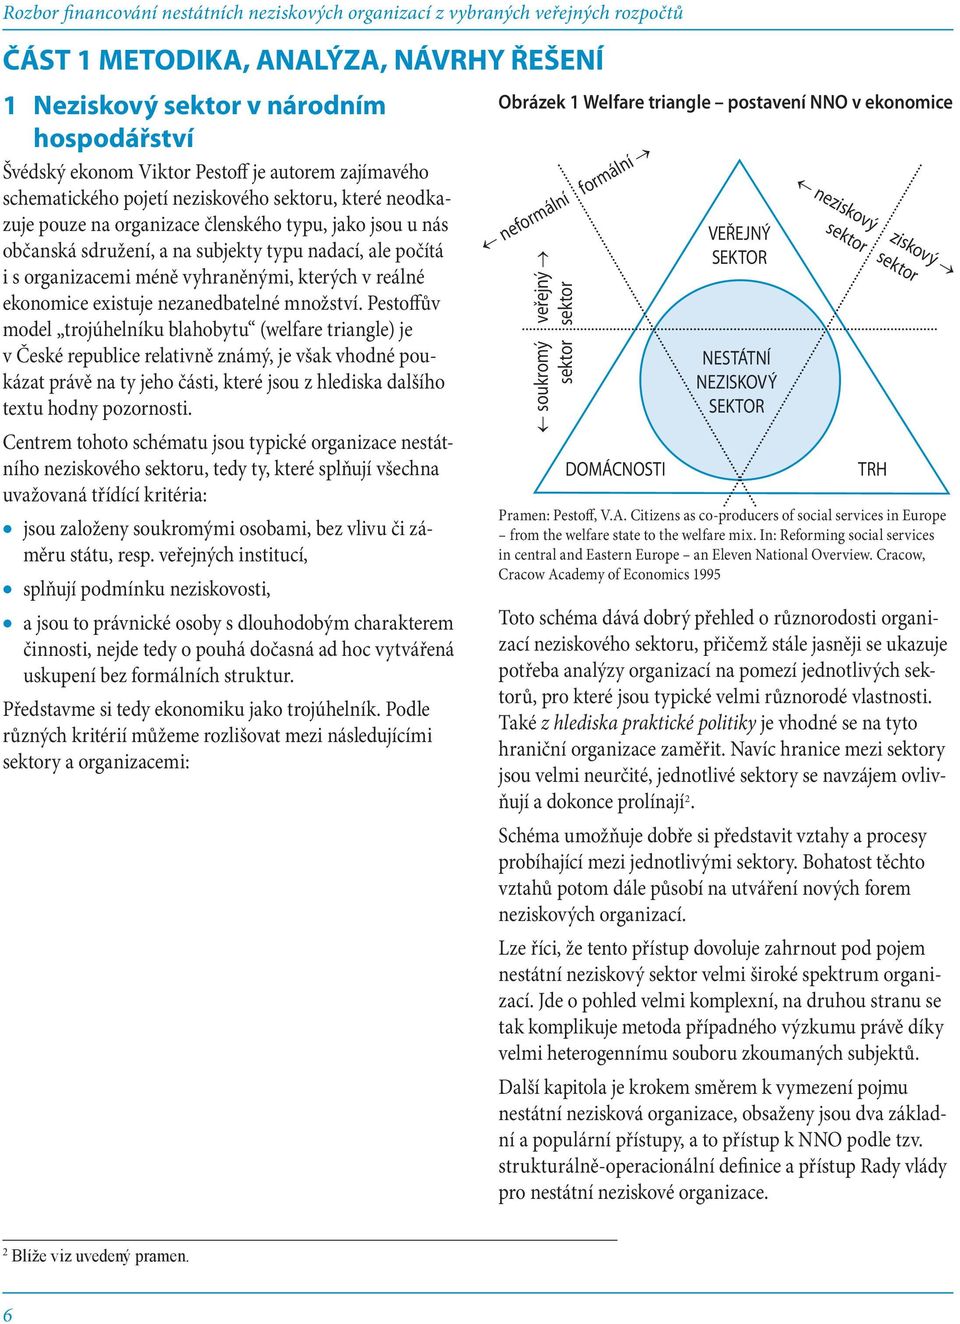 Pestoffův model trojúhelníku blahobytu (welfare triangle) je v České republice relativně známý, je však vhodné poukázat právě na ty jeho části, které jsou z hlediska dalšího textu hodny pozornosti.